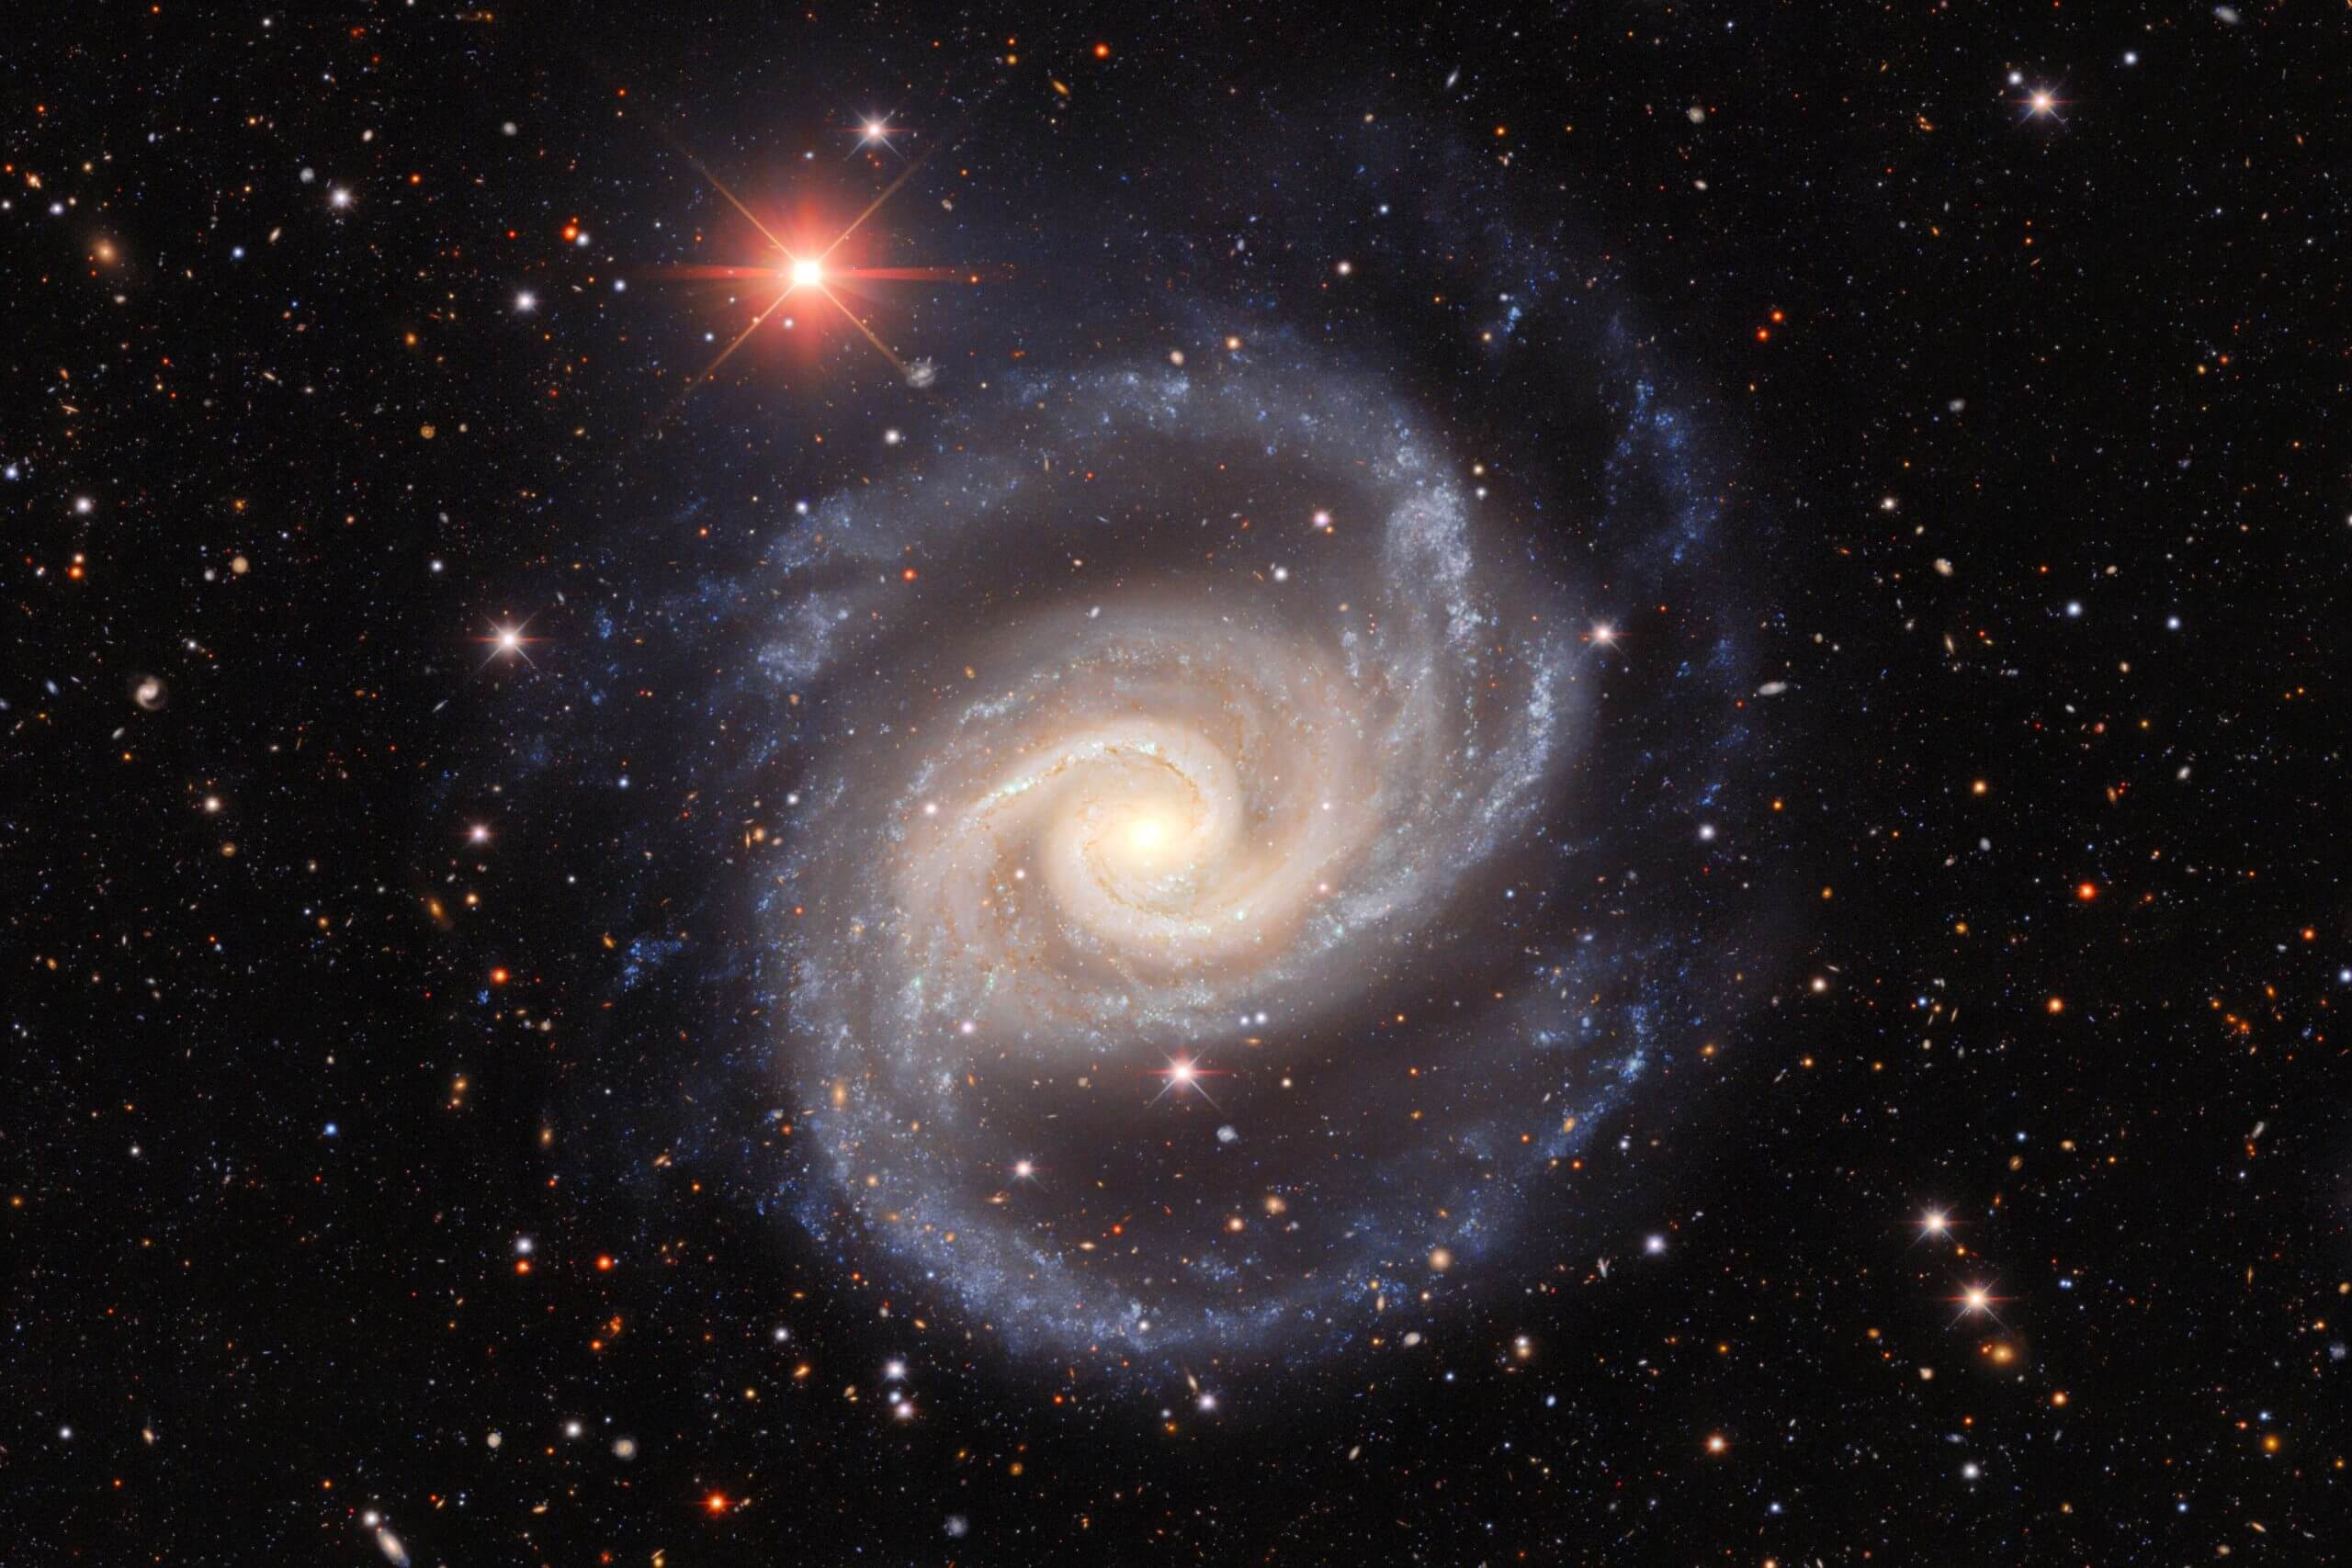 التقطت هذه الصورة بواسطة علماء الفلك باستخدام كاميرا الطاقة المظلمة الموجودة على مرصد Victor M الذي يبلغ طوله 4 أمتار. بلانكو في مرصد سيرو تولولو للبلدان الأمريكية يلتقط المجرة NGC 1566 وهي تدور وترمي أذرعها عبر الفضاء. غالبًا ما تتم دراسة المجرة الحلزونية واسمها الشعبي الراقصة الإسبانية من قبل علماء الفلك الذين يدرسون مجموعات المجرات والنجوم من مختلف الأعمار والثقوب السوداء المجرية. حقوق الصورة: مسح الطاقة المظلمة/DOE/FNAL/DECam/CTIO/NOIRLab/NSF/AURA